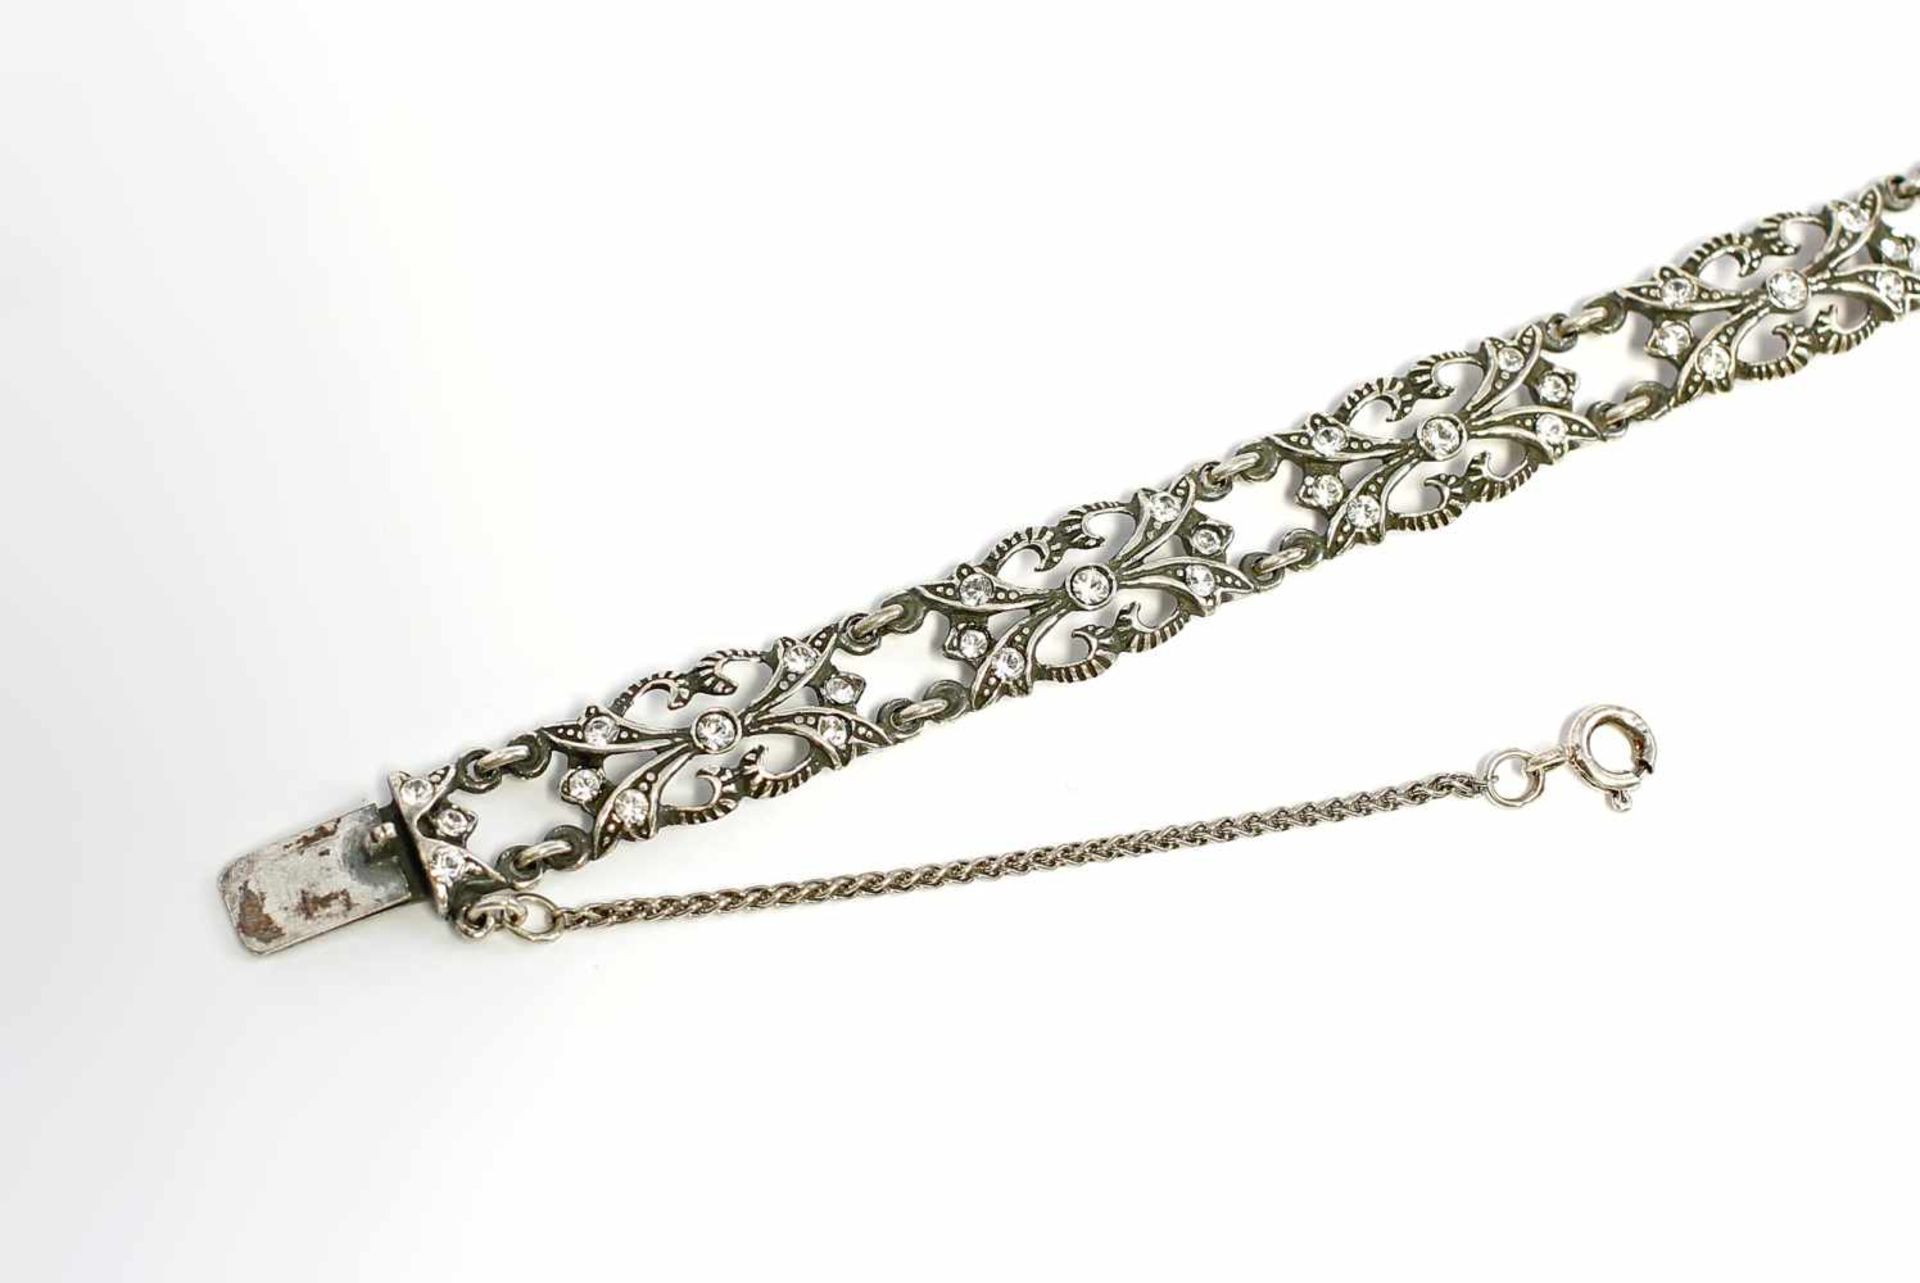 Armband mit Swarovski-Steinen 925er Silber, hochwertige Manufakturarbeit, Fertigung nach hist.